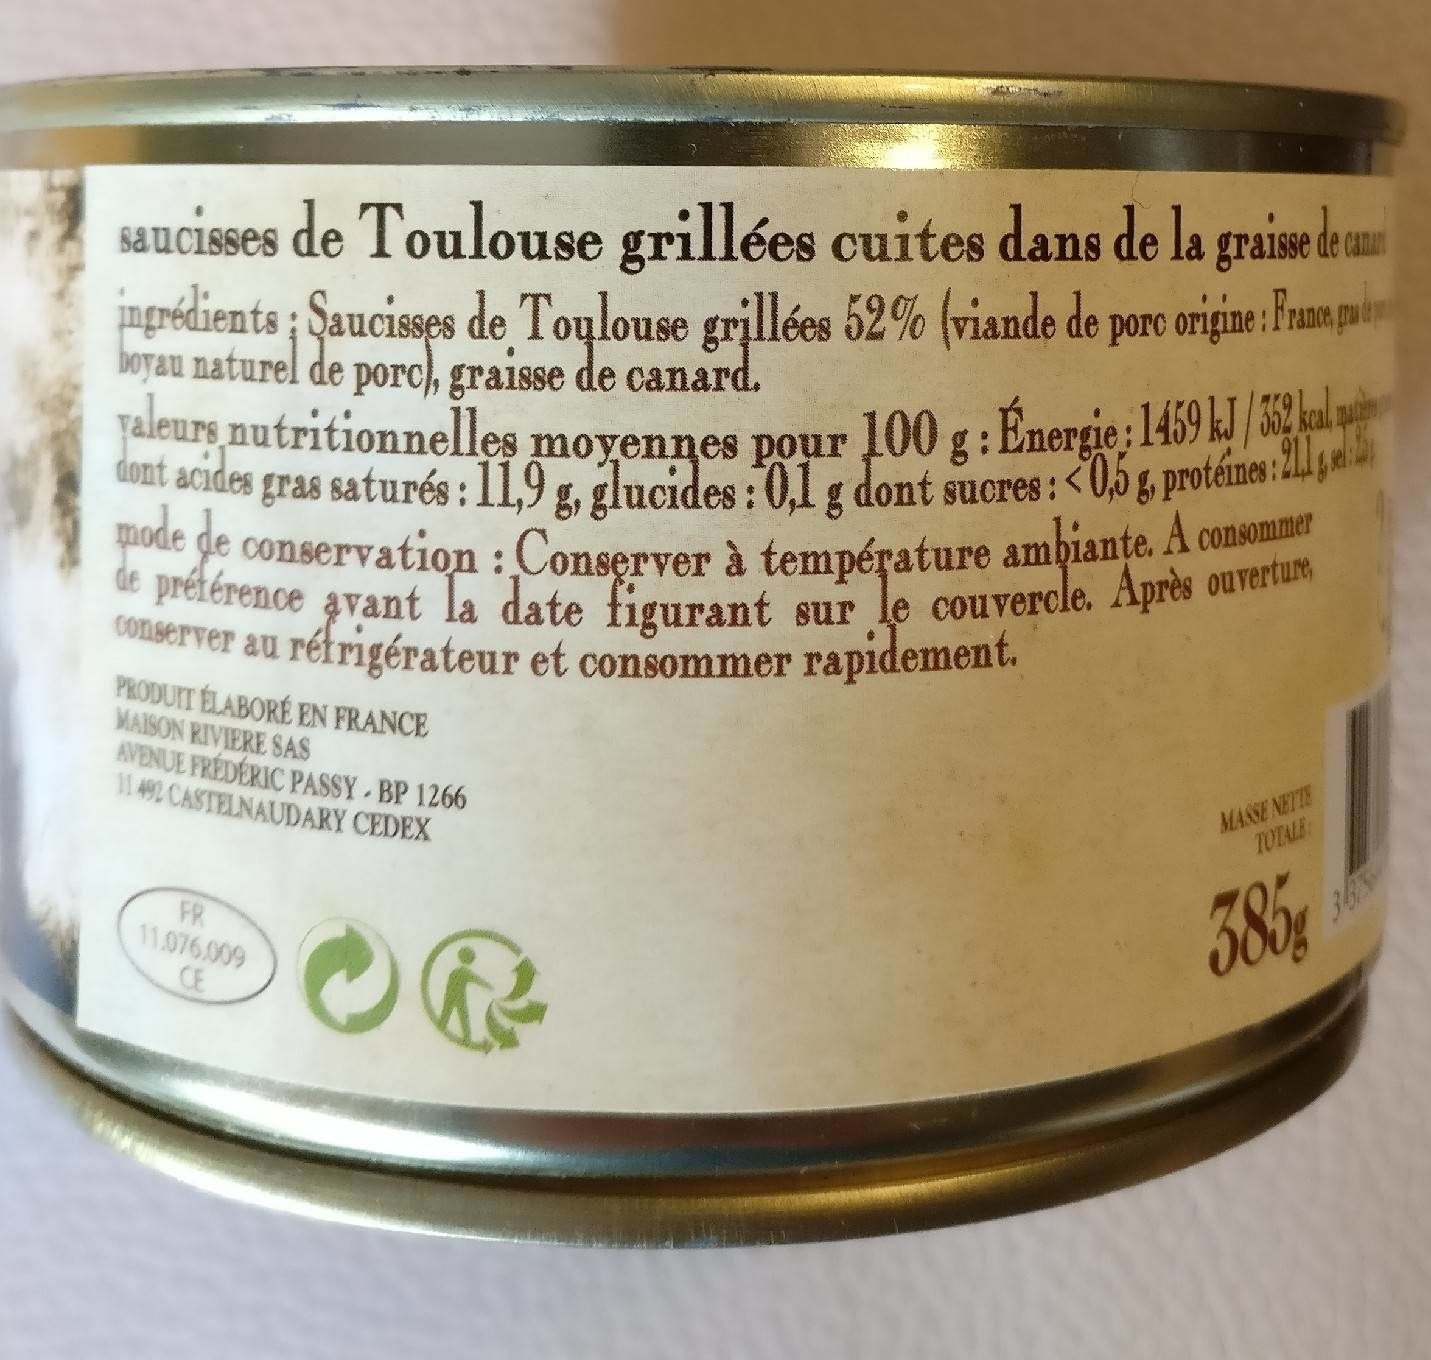 Les saucisses de Toulouse grillées - Nutrition facts - fr